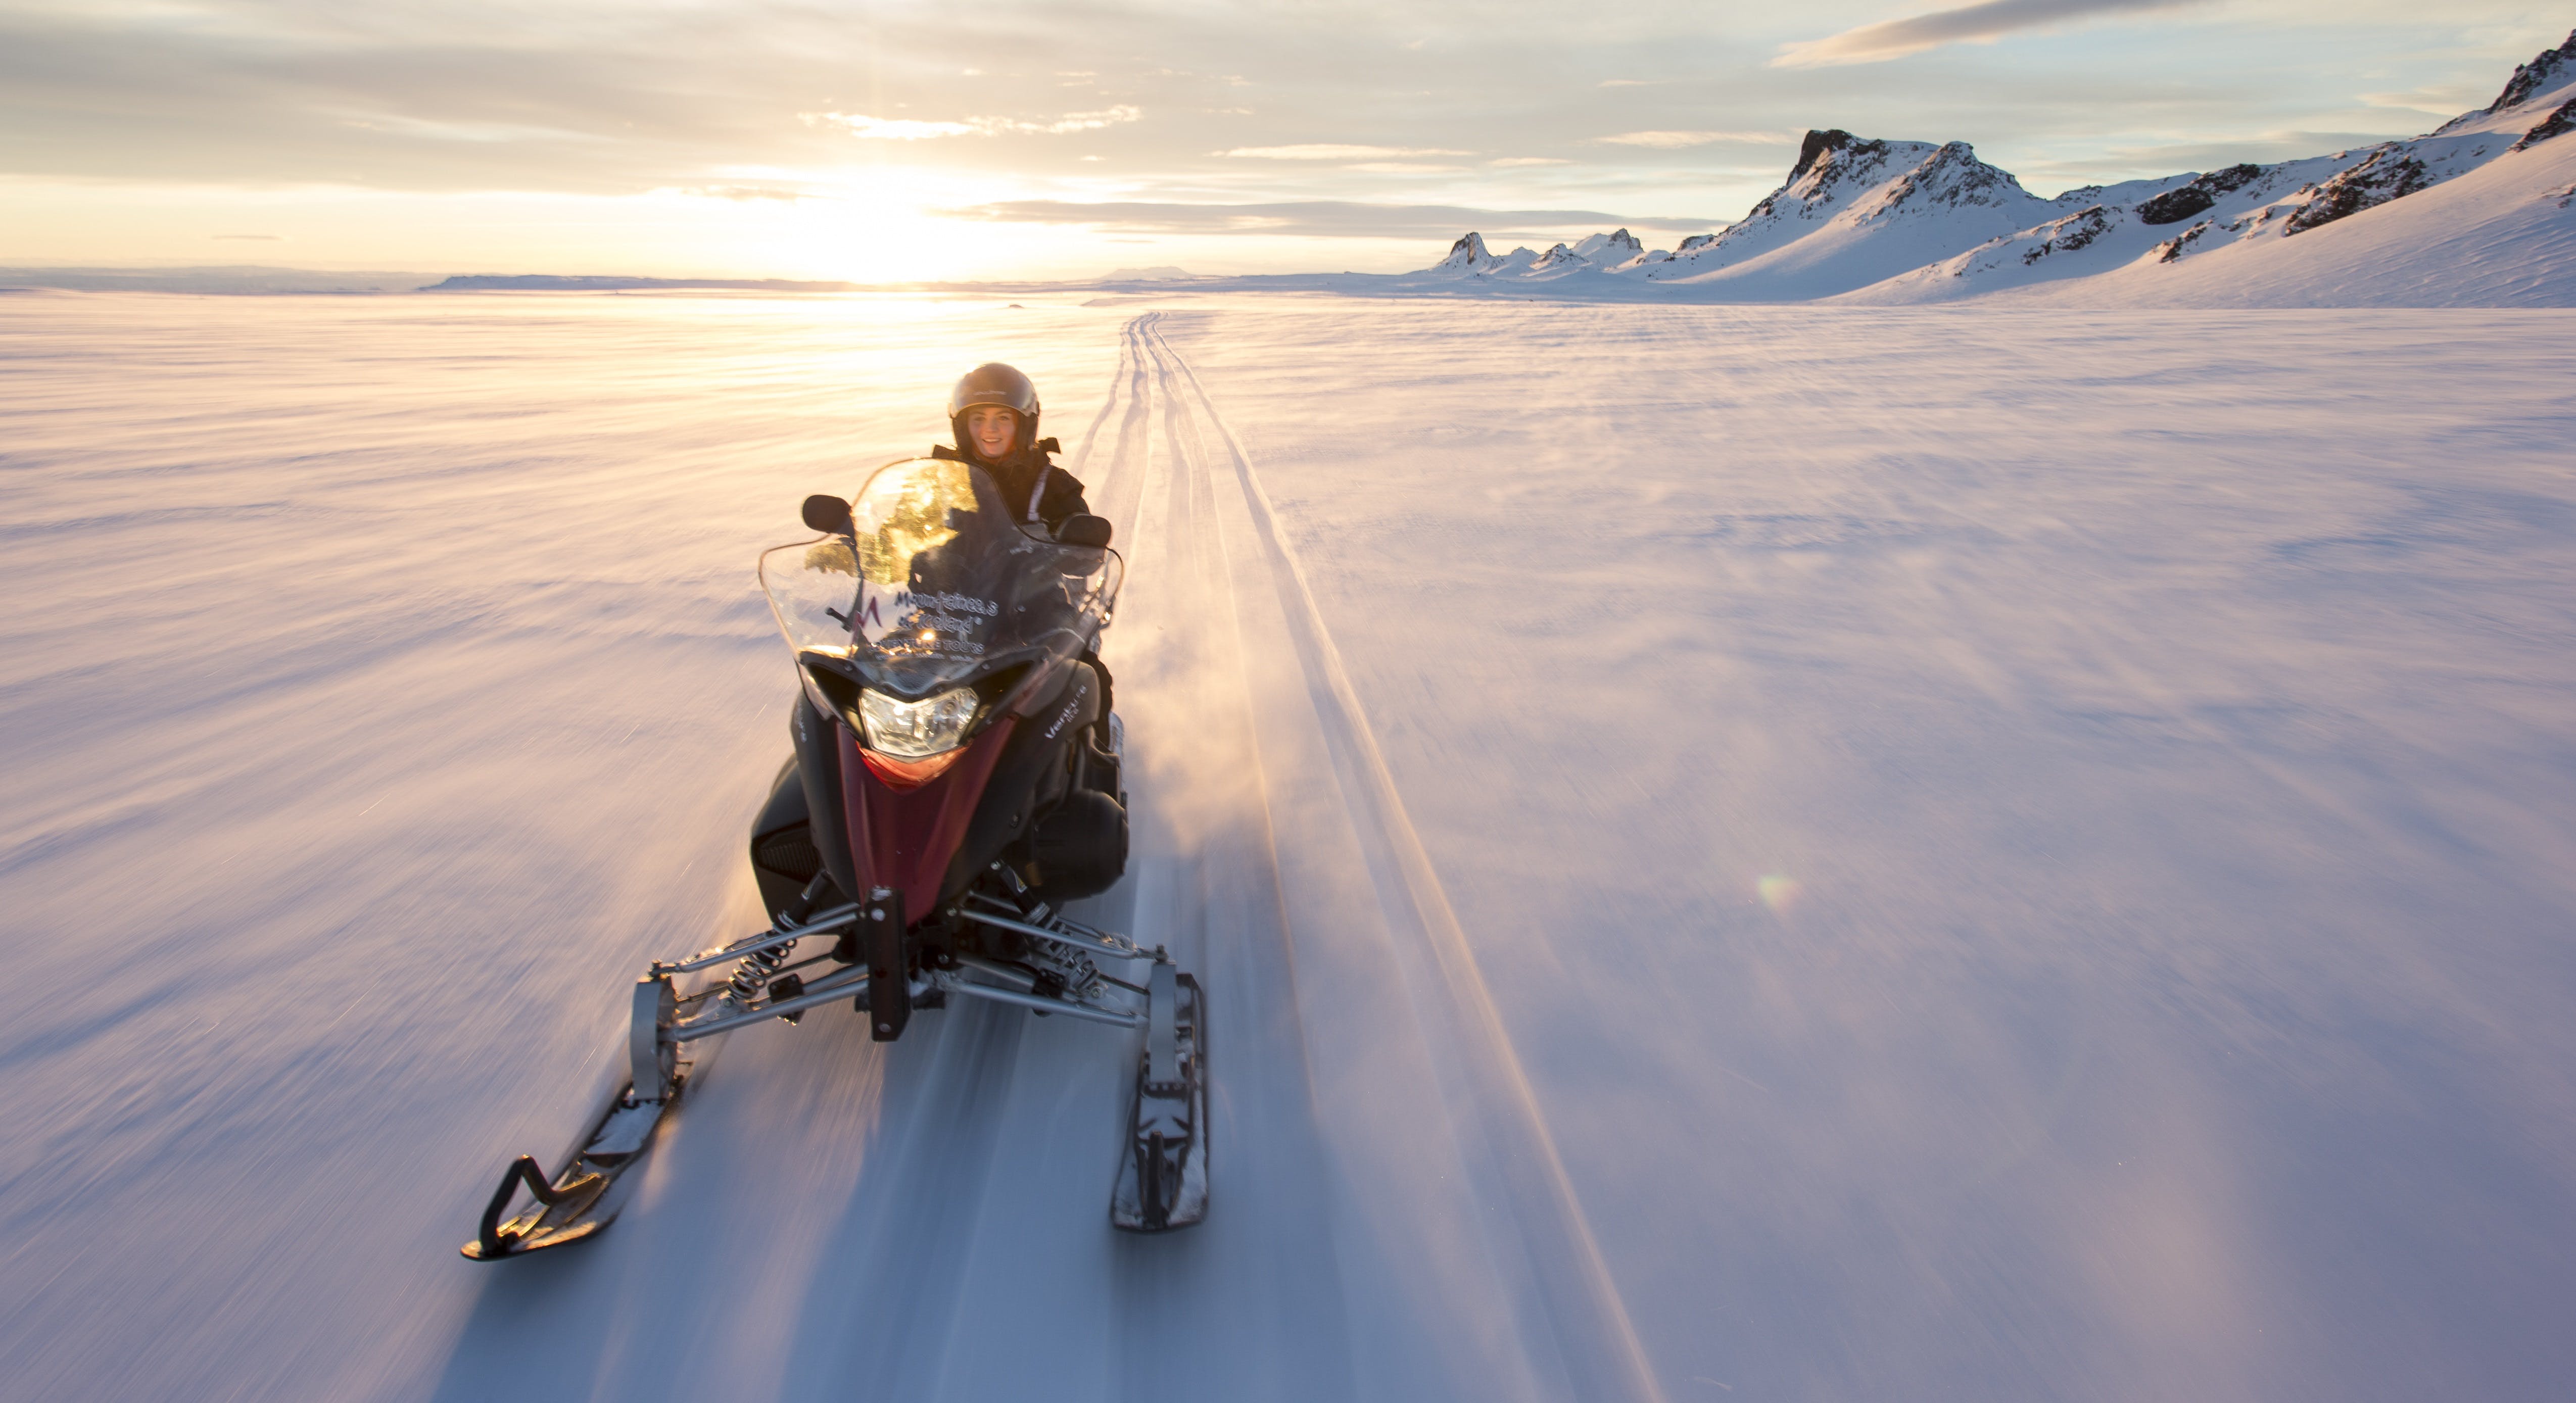 Schneemobilfahren ist eine der aufregendsten Aktivitäten, die Island zu bieten hat.